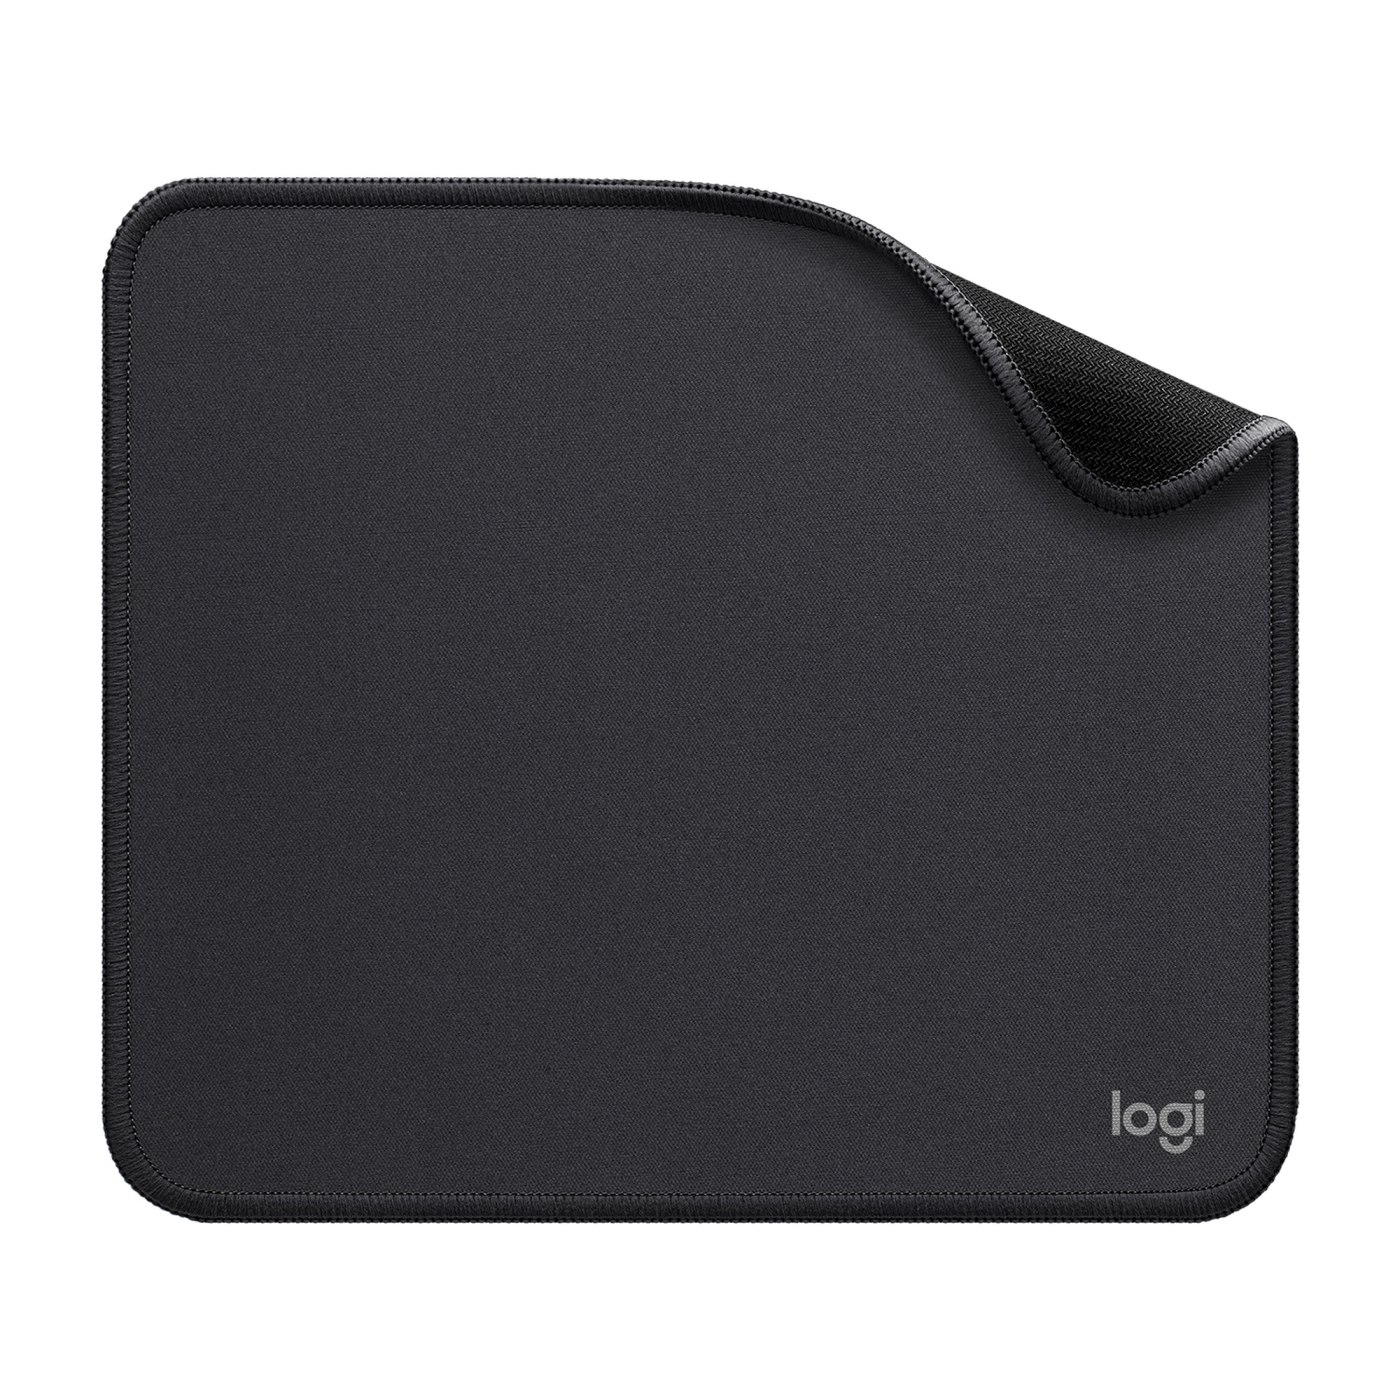 Купить Игровая поверхность Logitech Mouse Pad Studio Series Graphite - фото 1